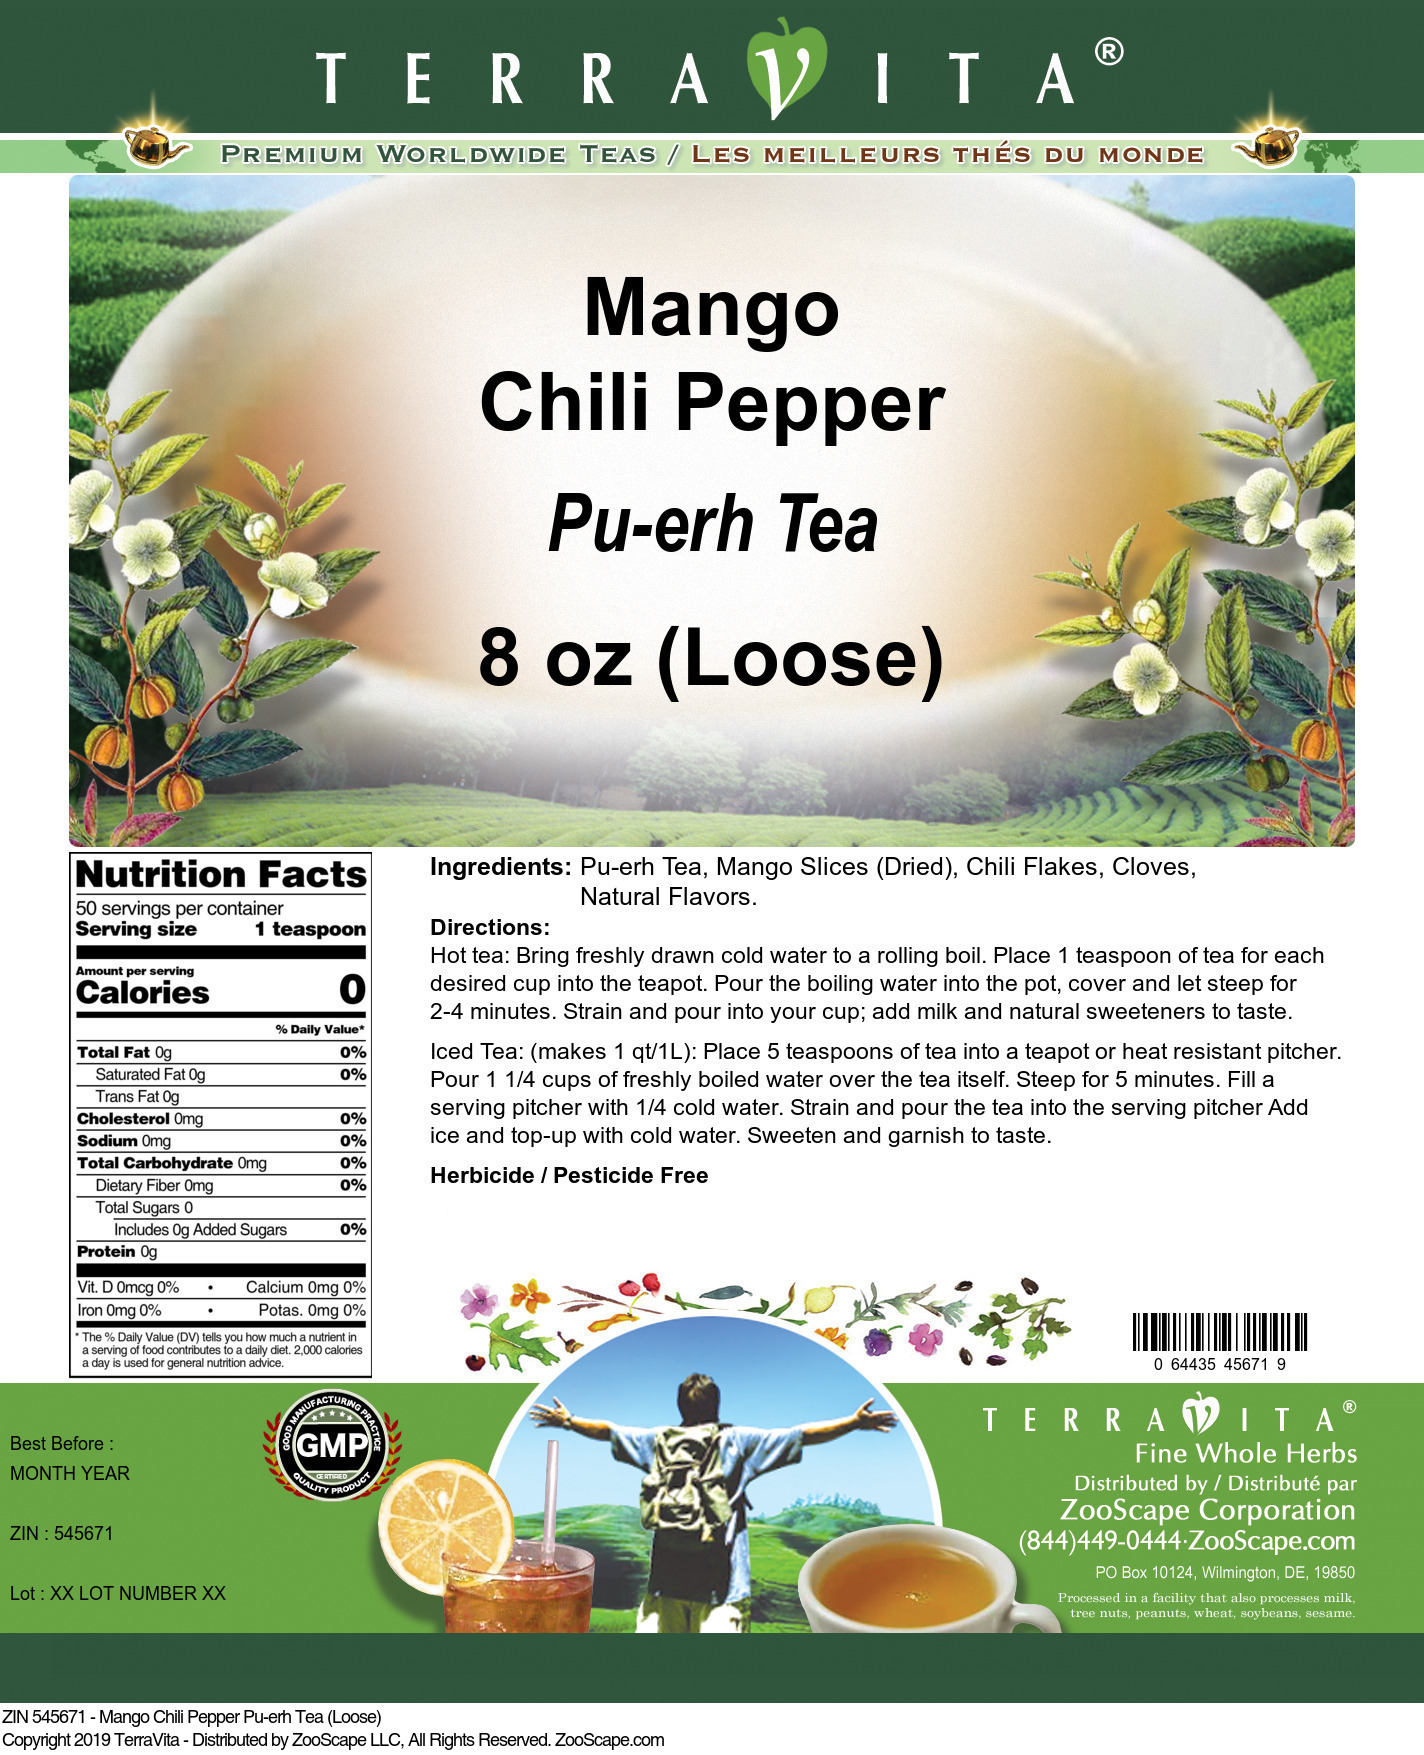 Mango Chili Pepper Pu-erh Tea (Loose) - Label